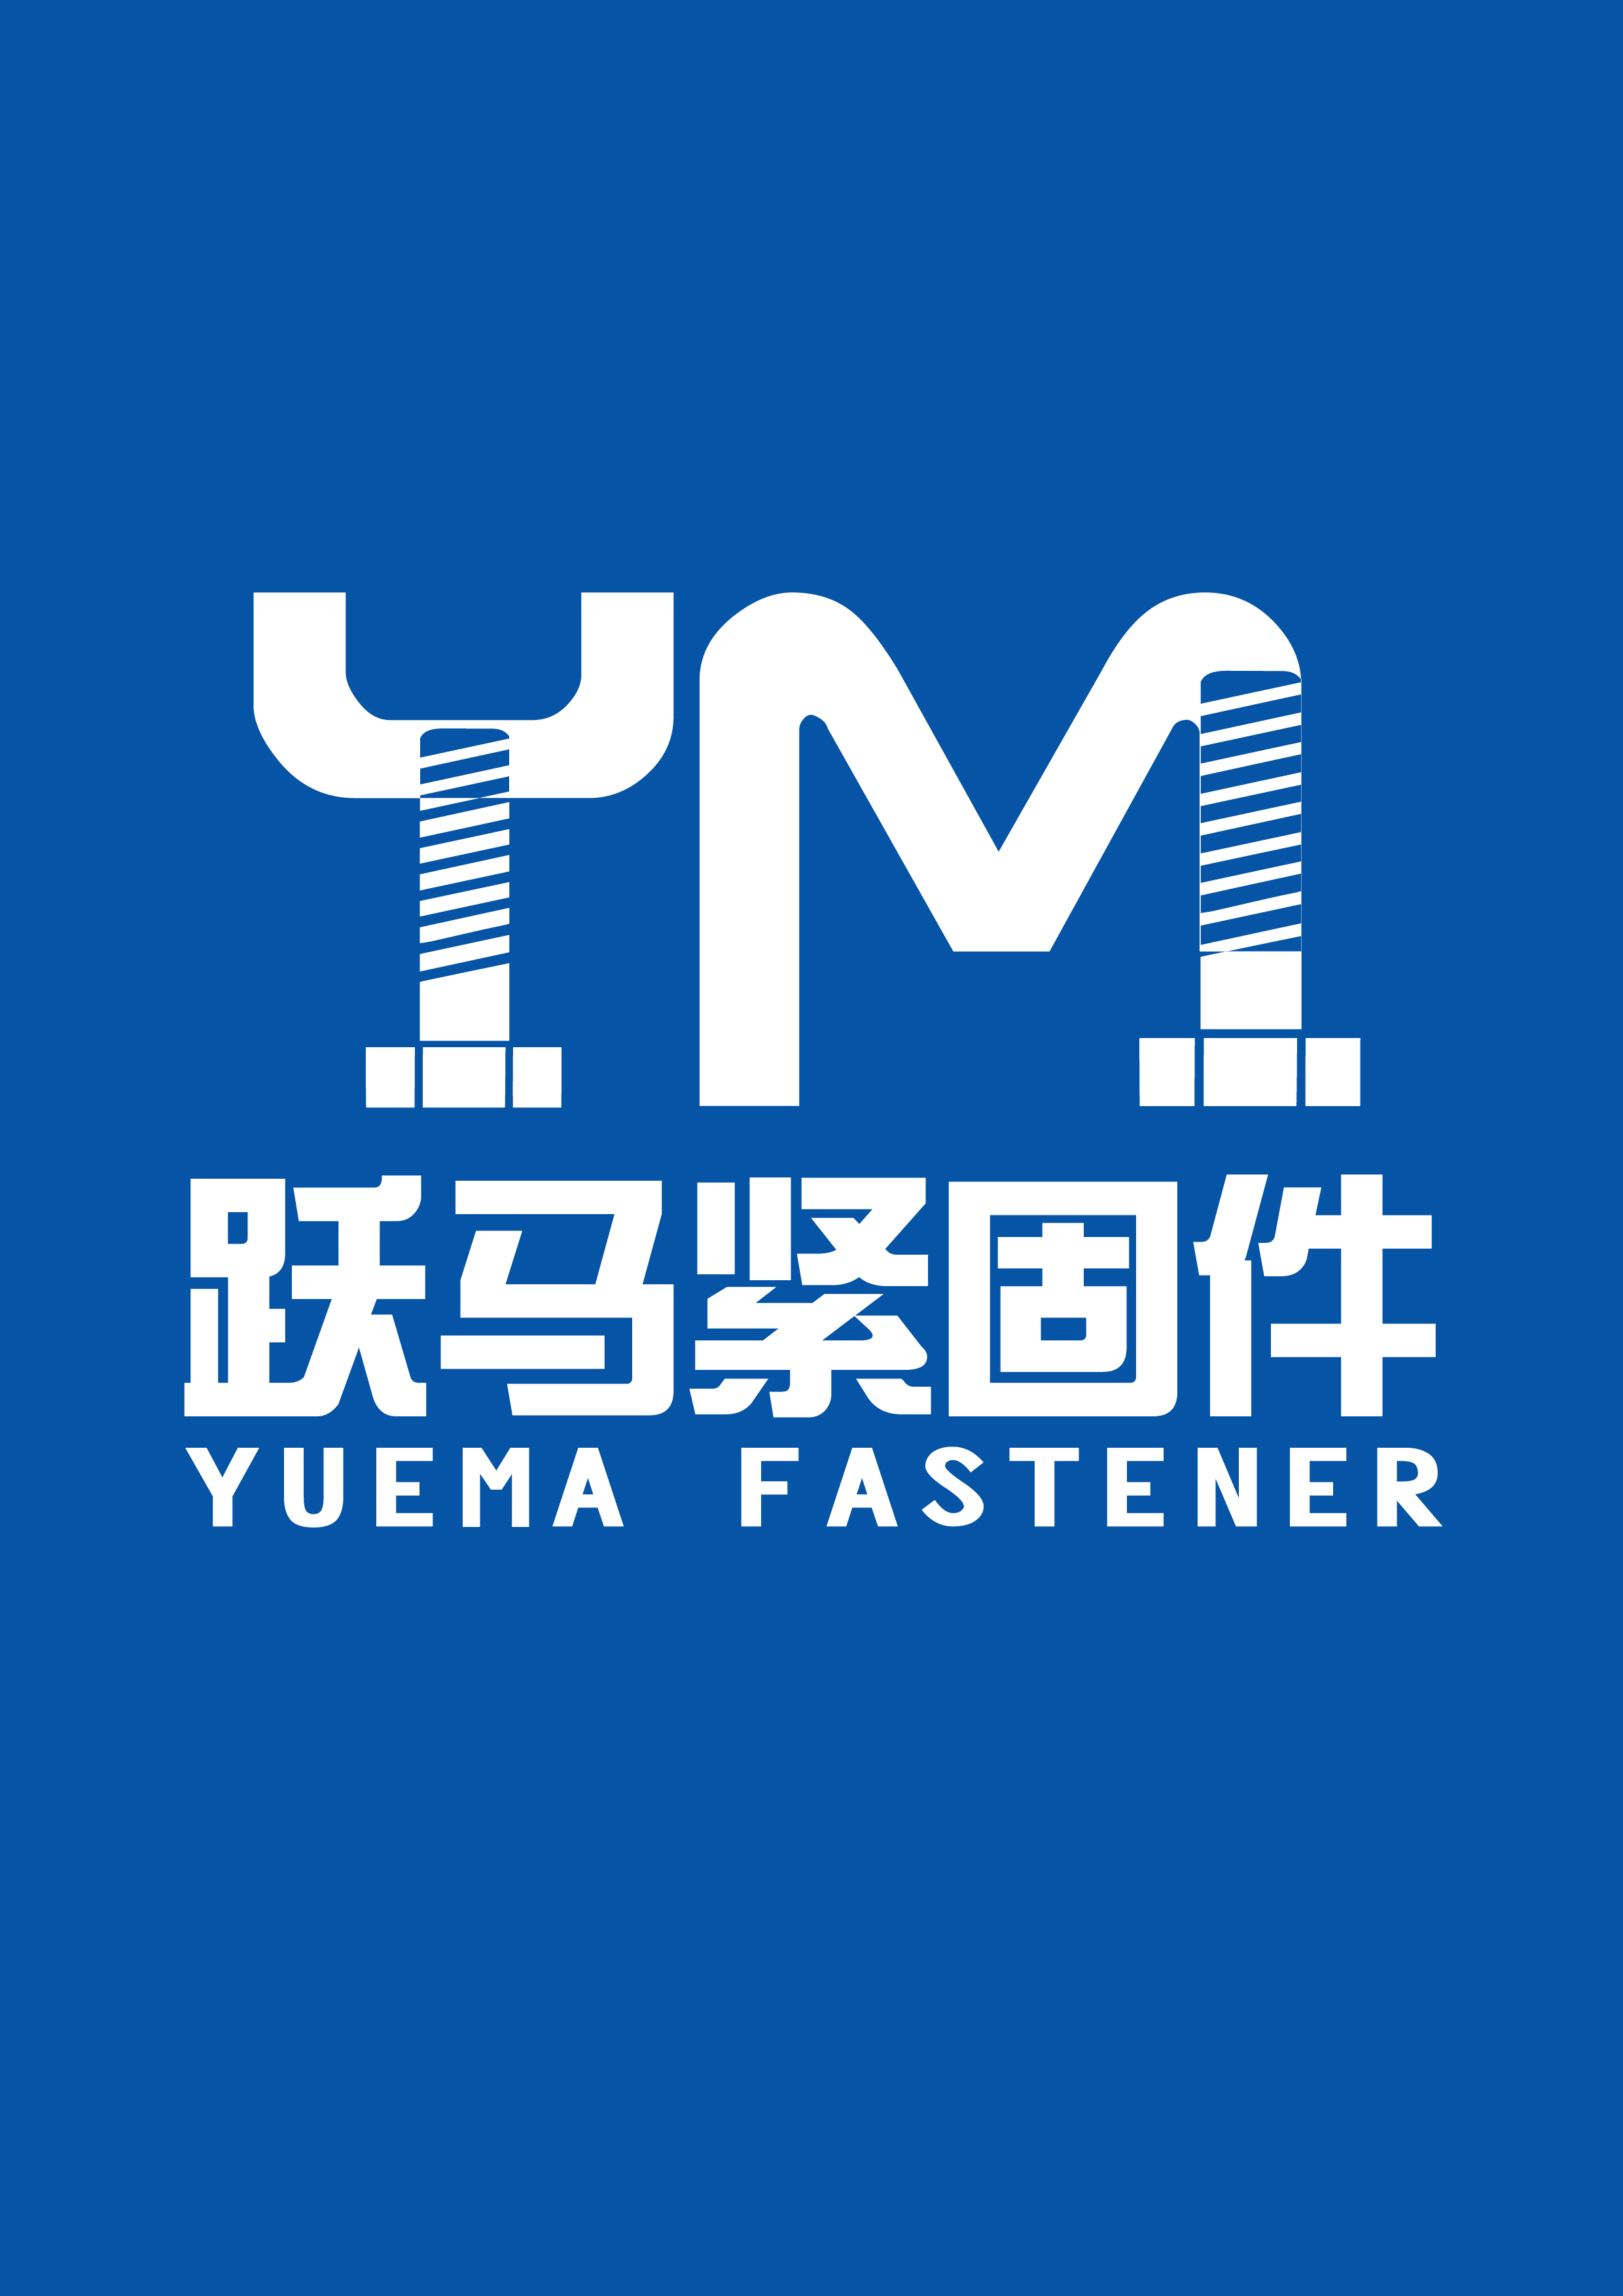 Ningbo Yuema Fastener Co., Ltd